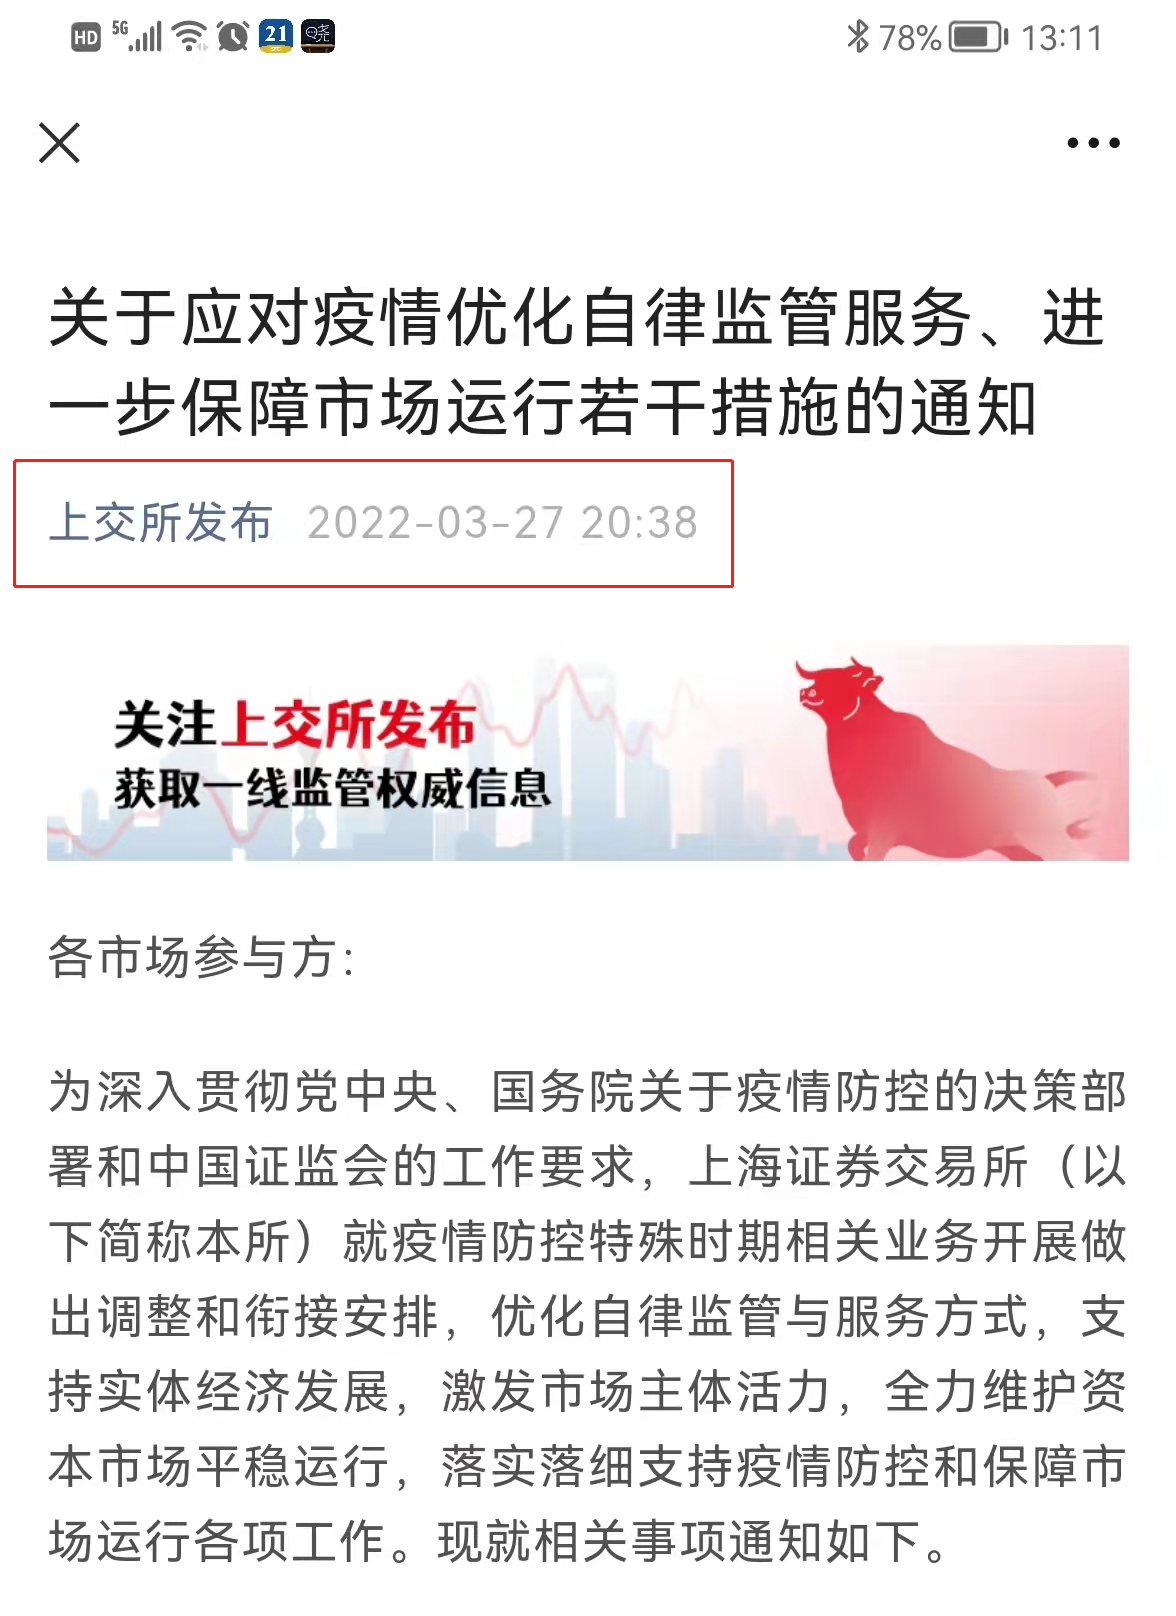 “上海分区分批封控，券商基金淡定应对，连夜回公司，关键岗24小时值守